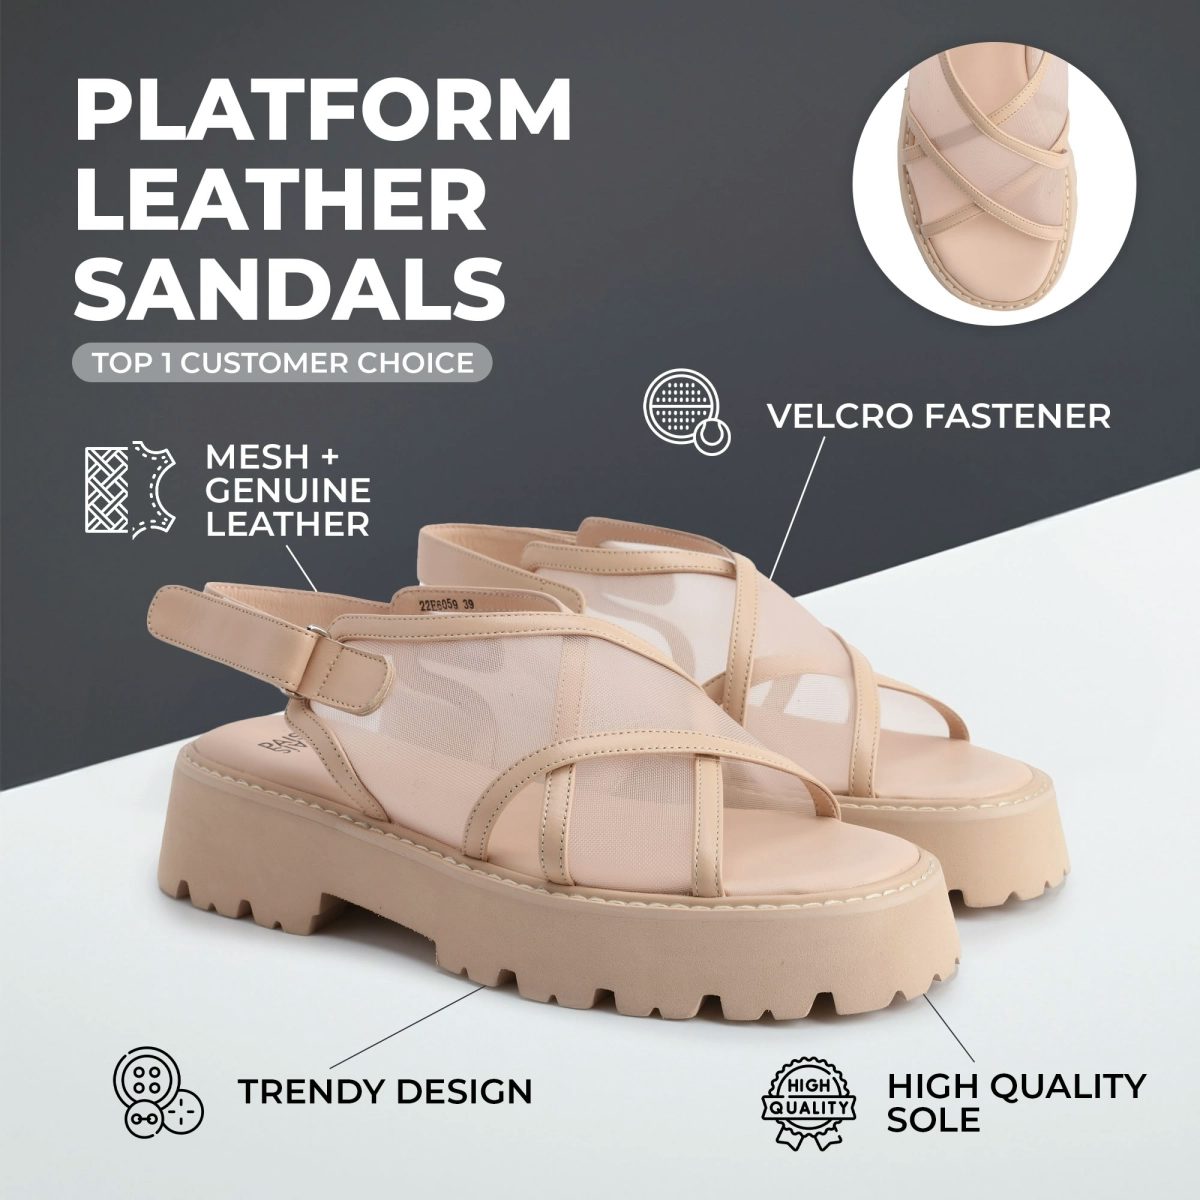 Platform leather sandals